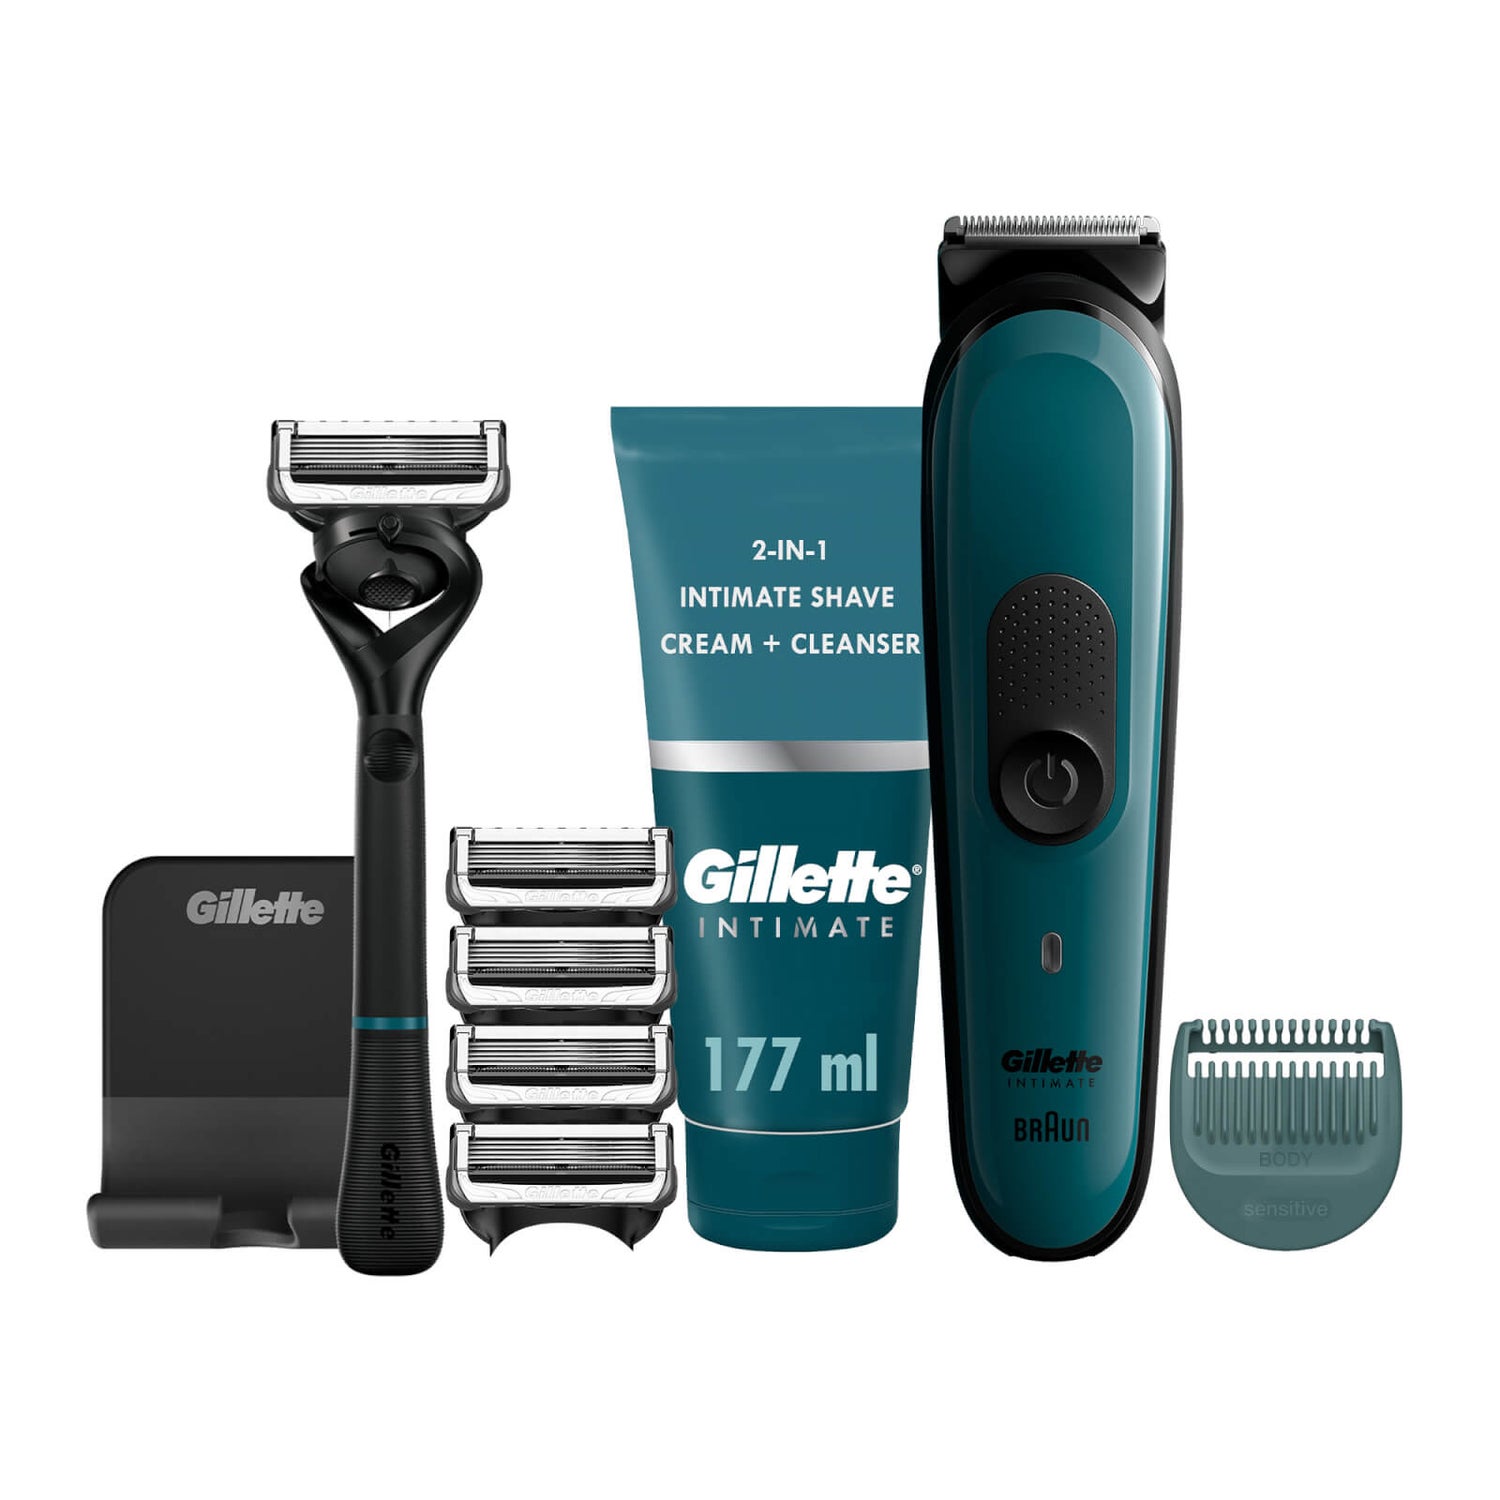 Gillette Intimate Pubic Hair Shaving Kit